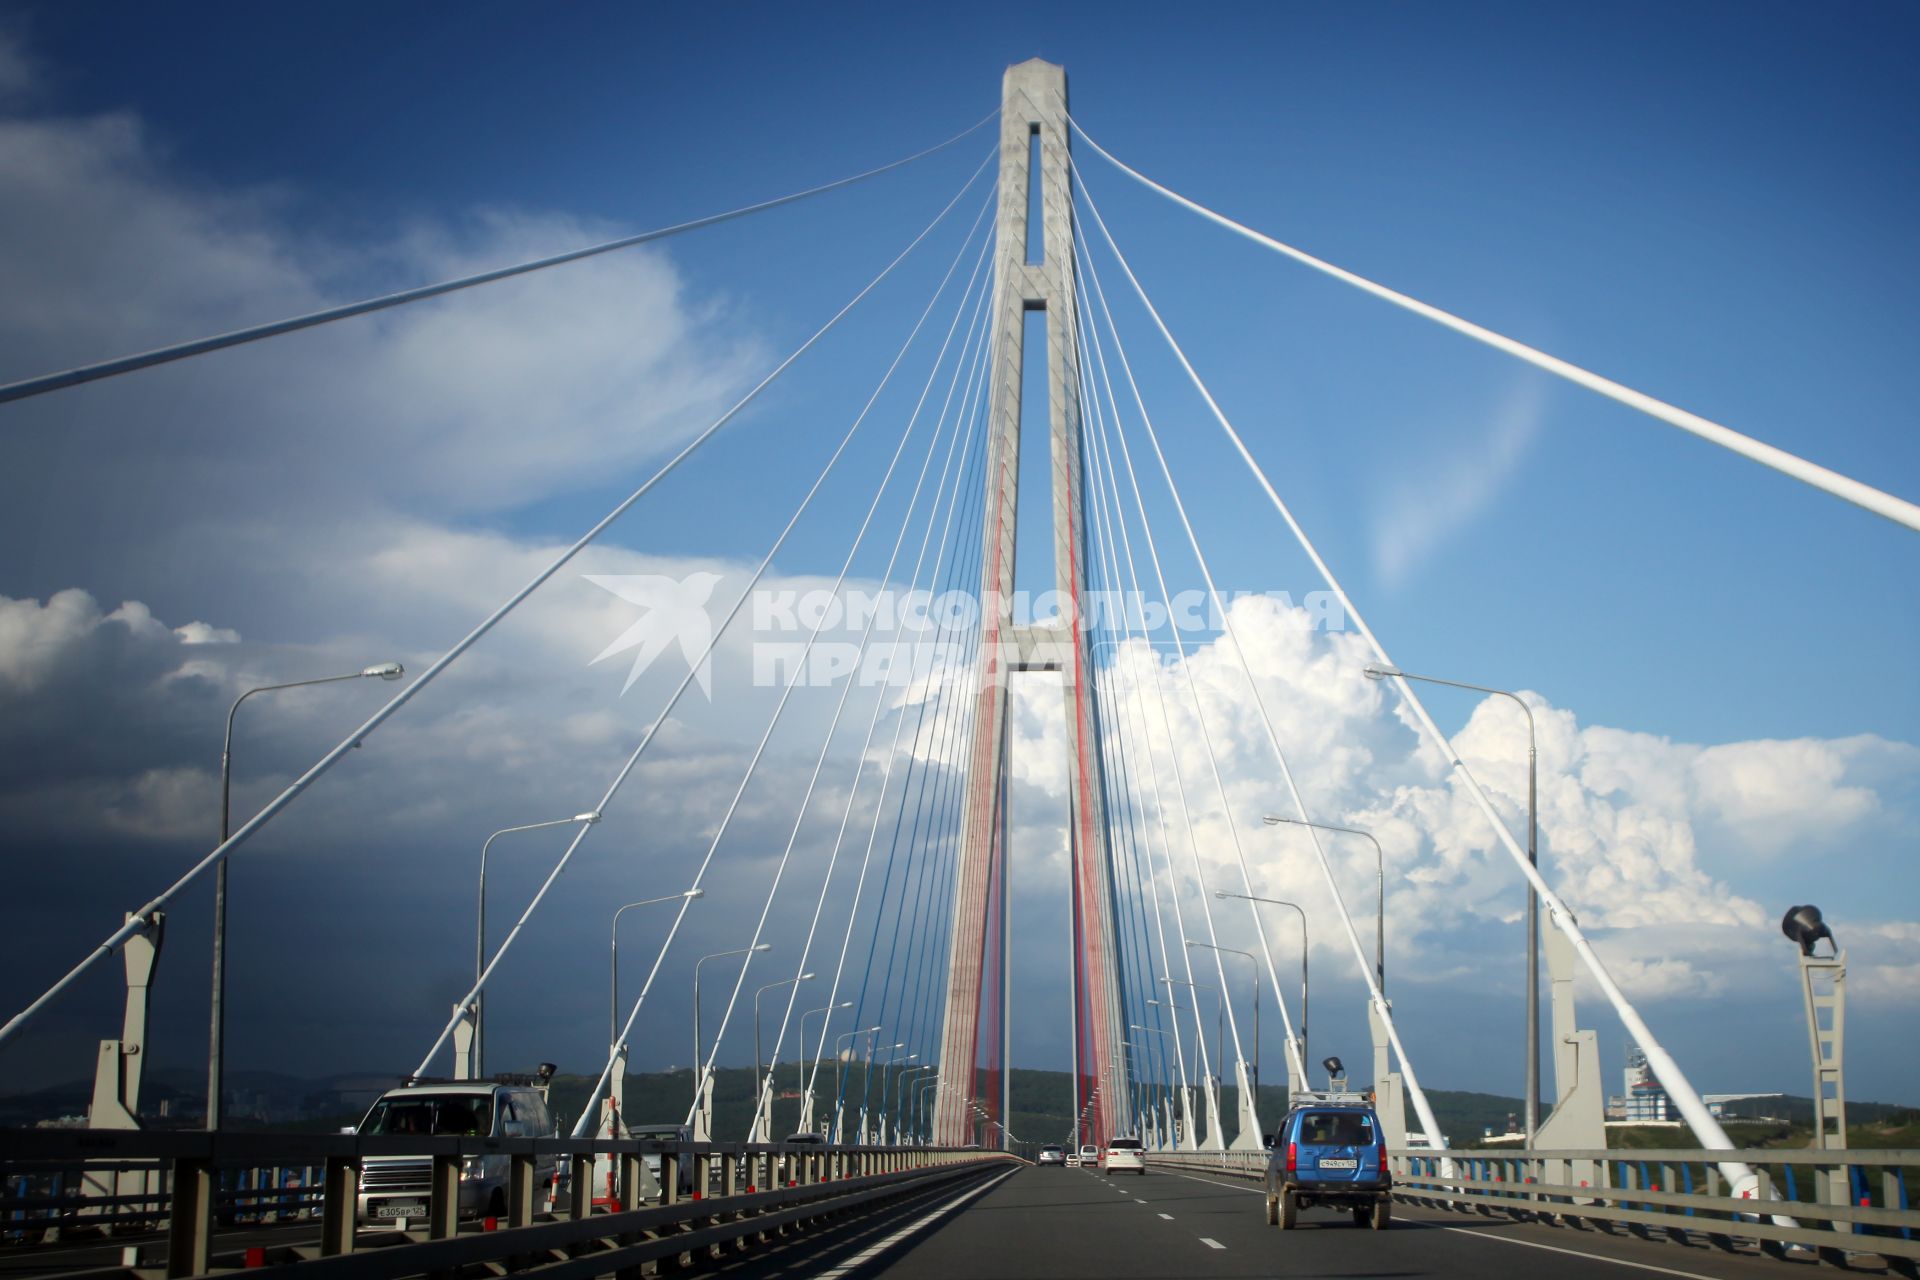 Русский мост — вантовый мост во Владивостоке, соединяющий полуостров Назимова с мысом Новосильского на острове Русском.